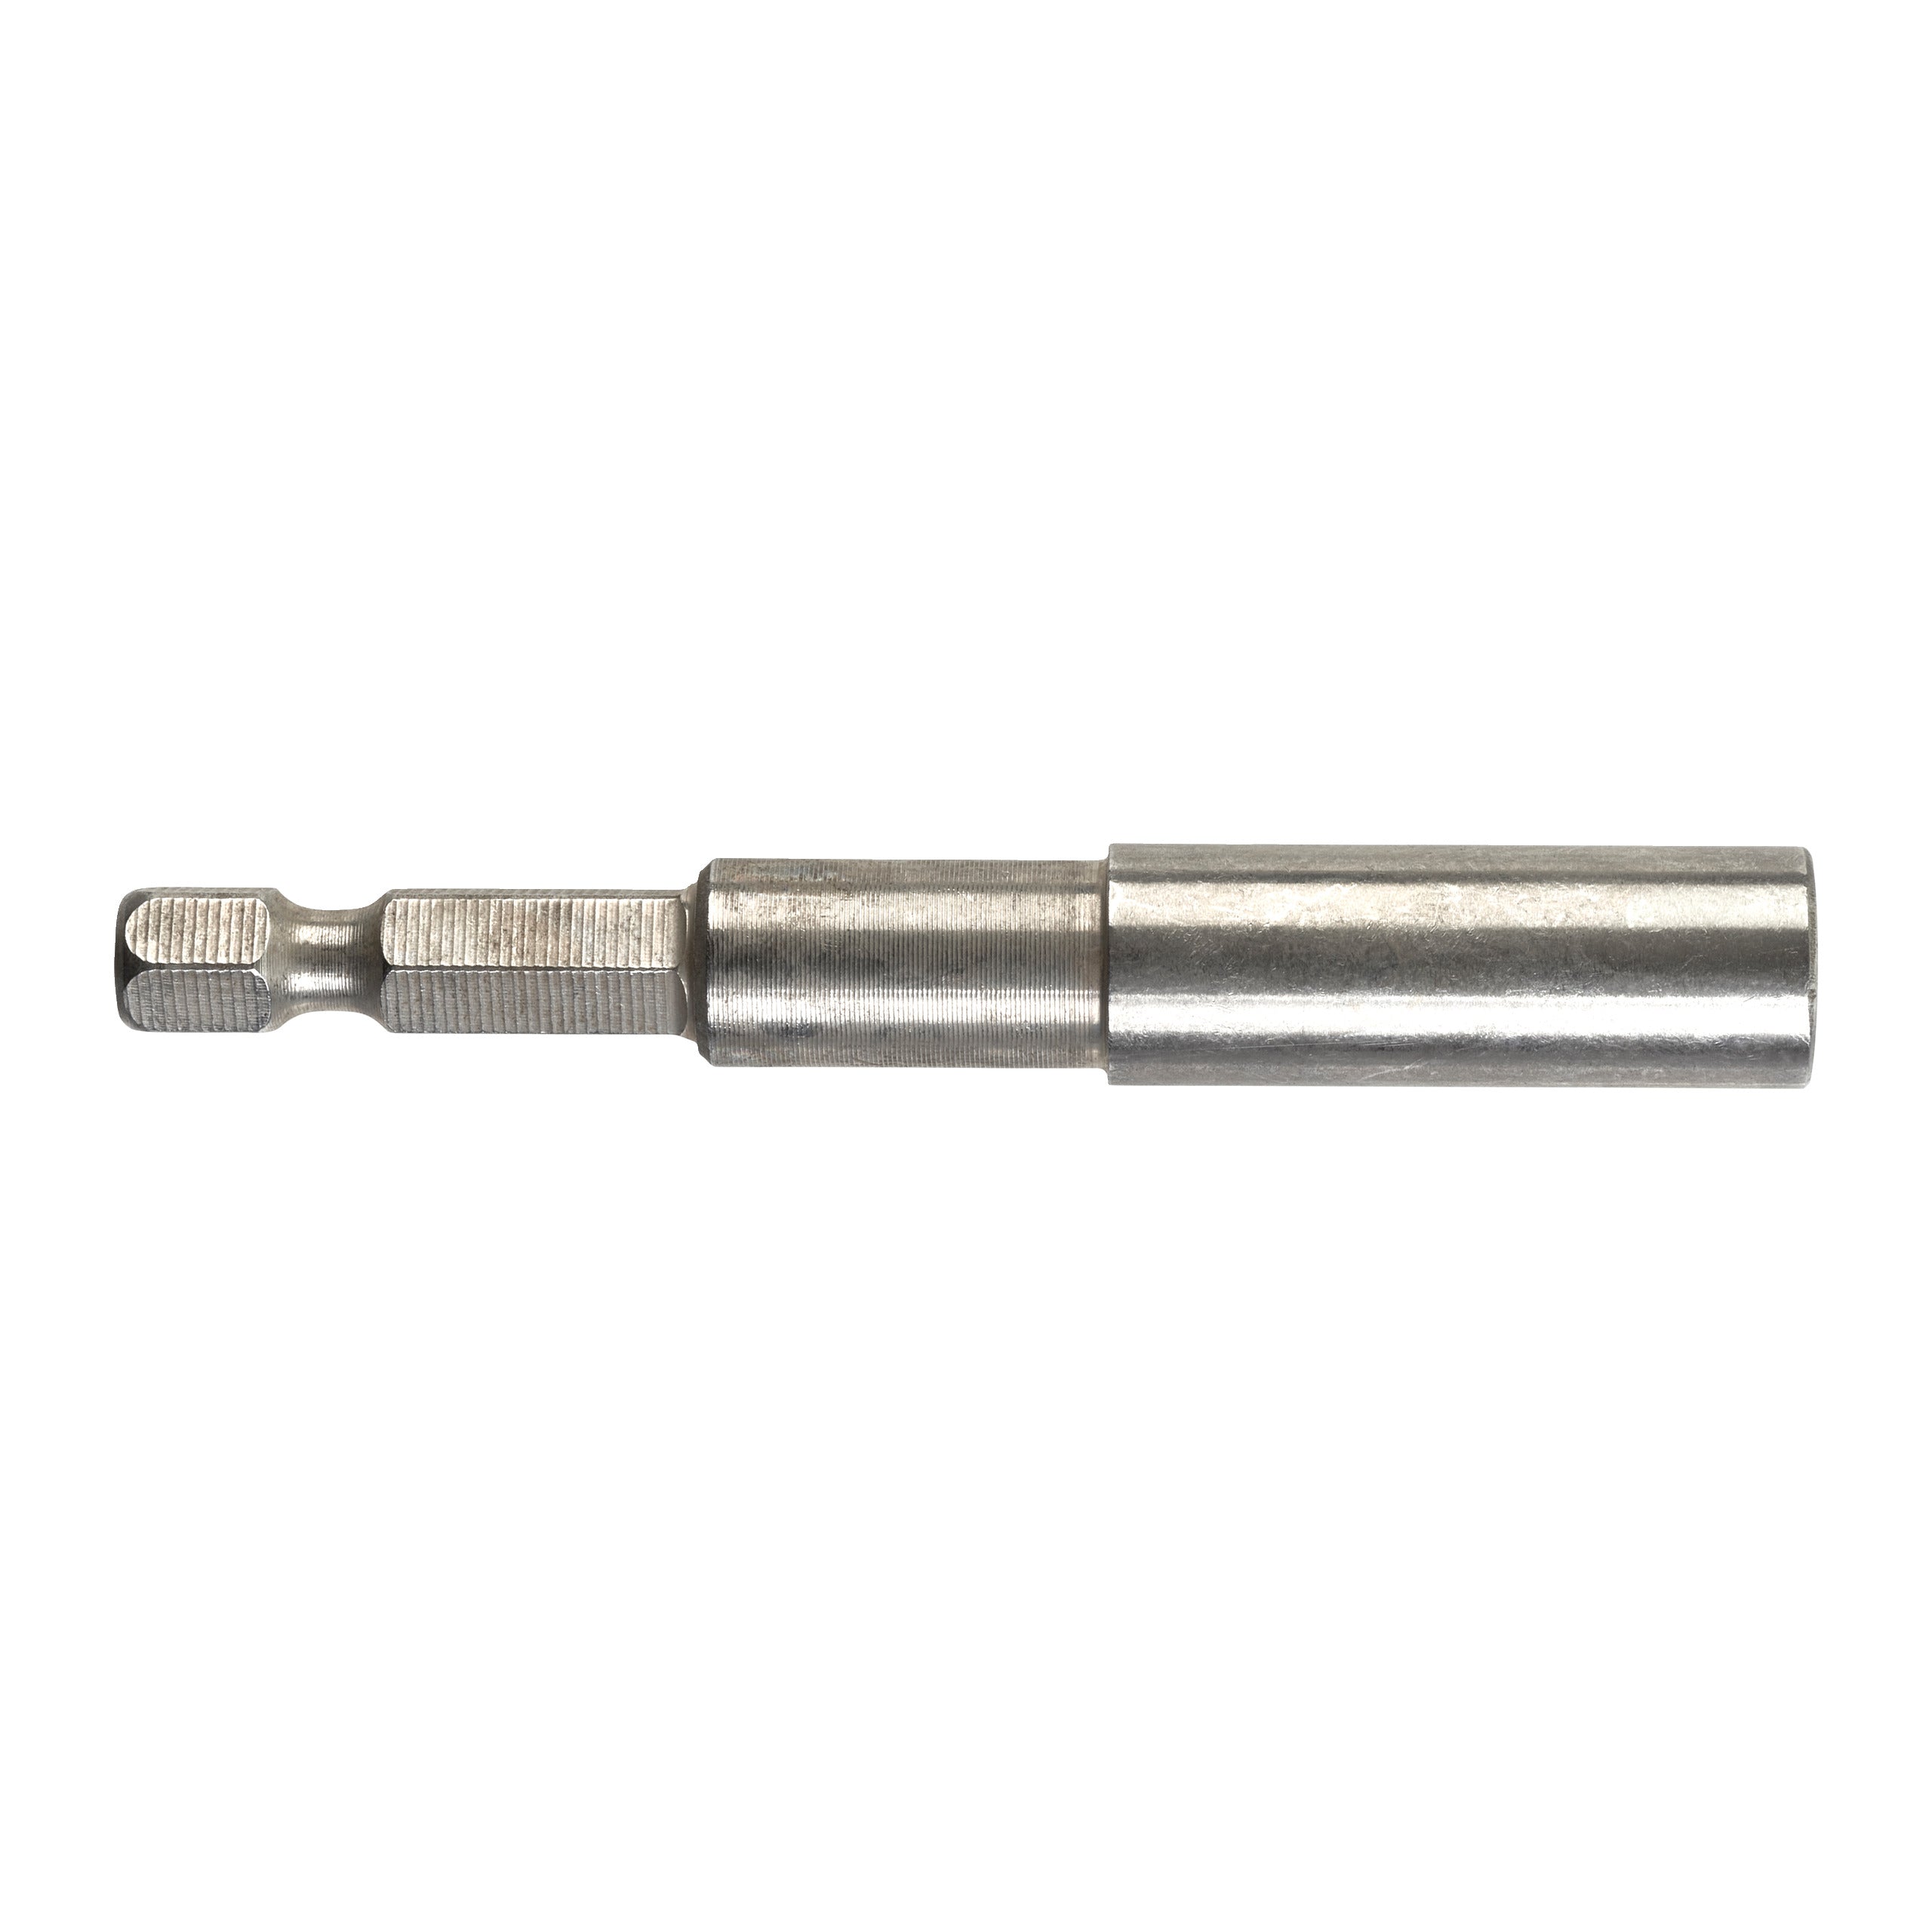 Prelungitor magnetic pentru biți (lungime 76 mm) pentru TKSE 2500 Q, Milwaukee cod 48323070